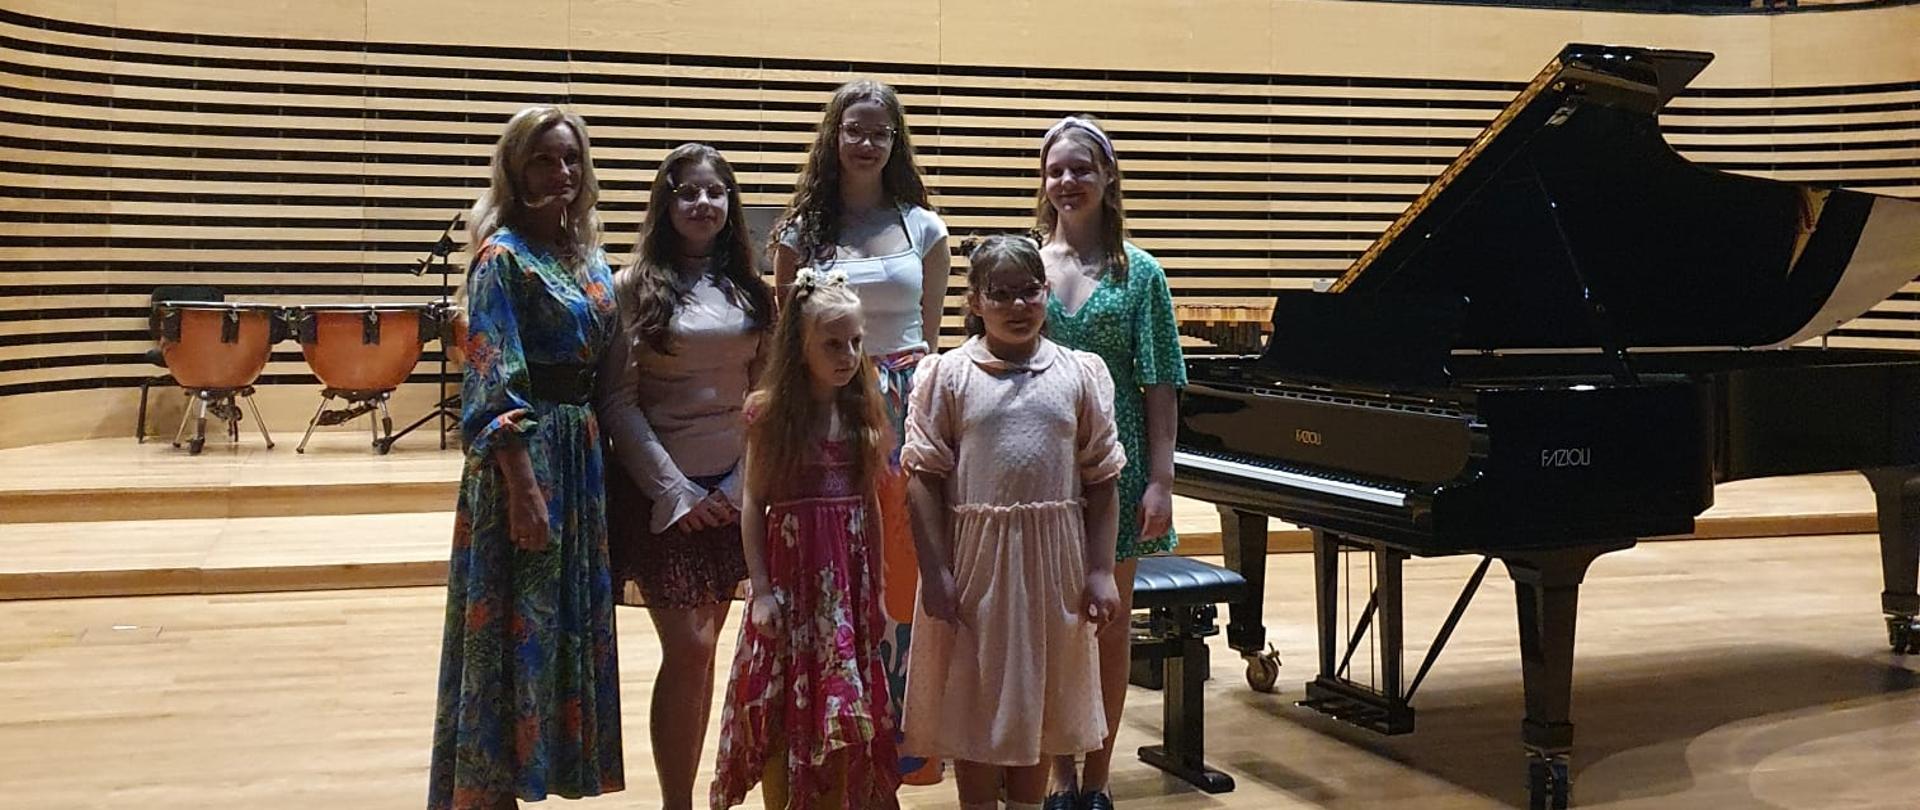 Pięć dziewczynek i kobieta stoją na estradzie sali koncertowej przy fortepianie.